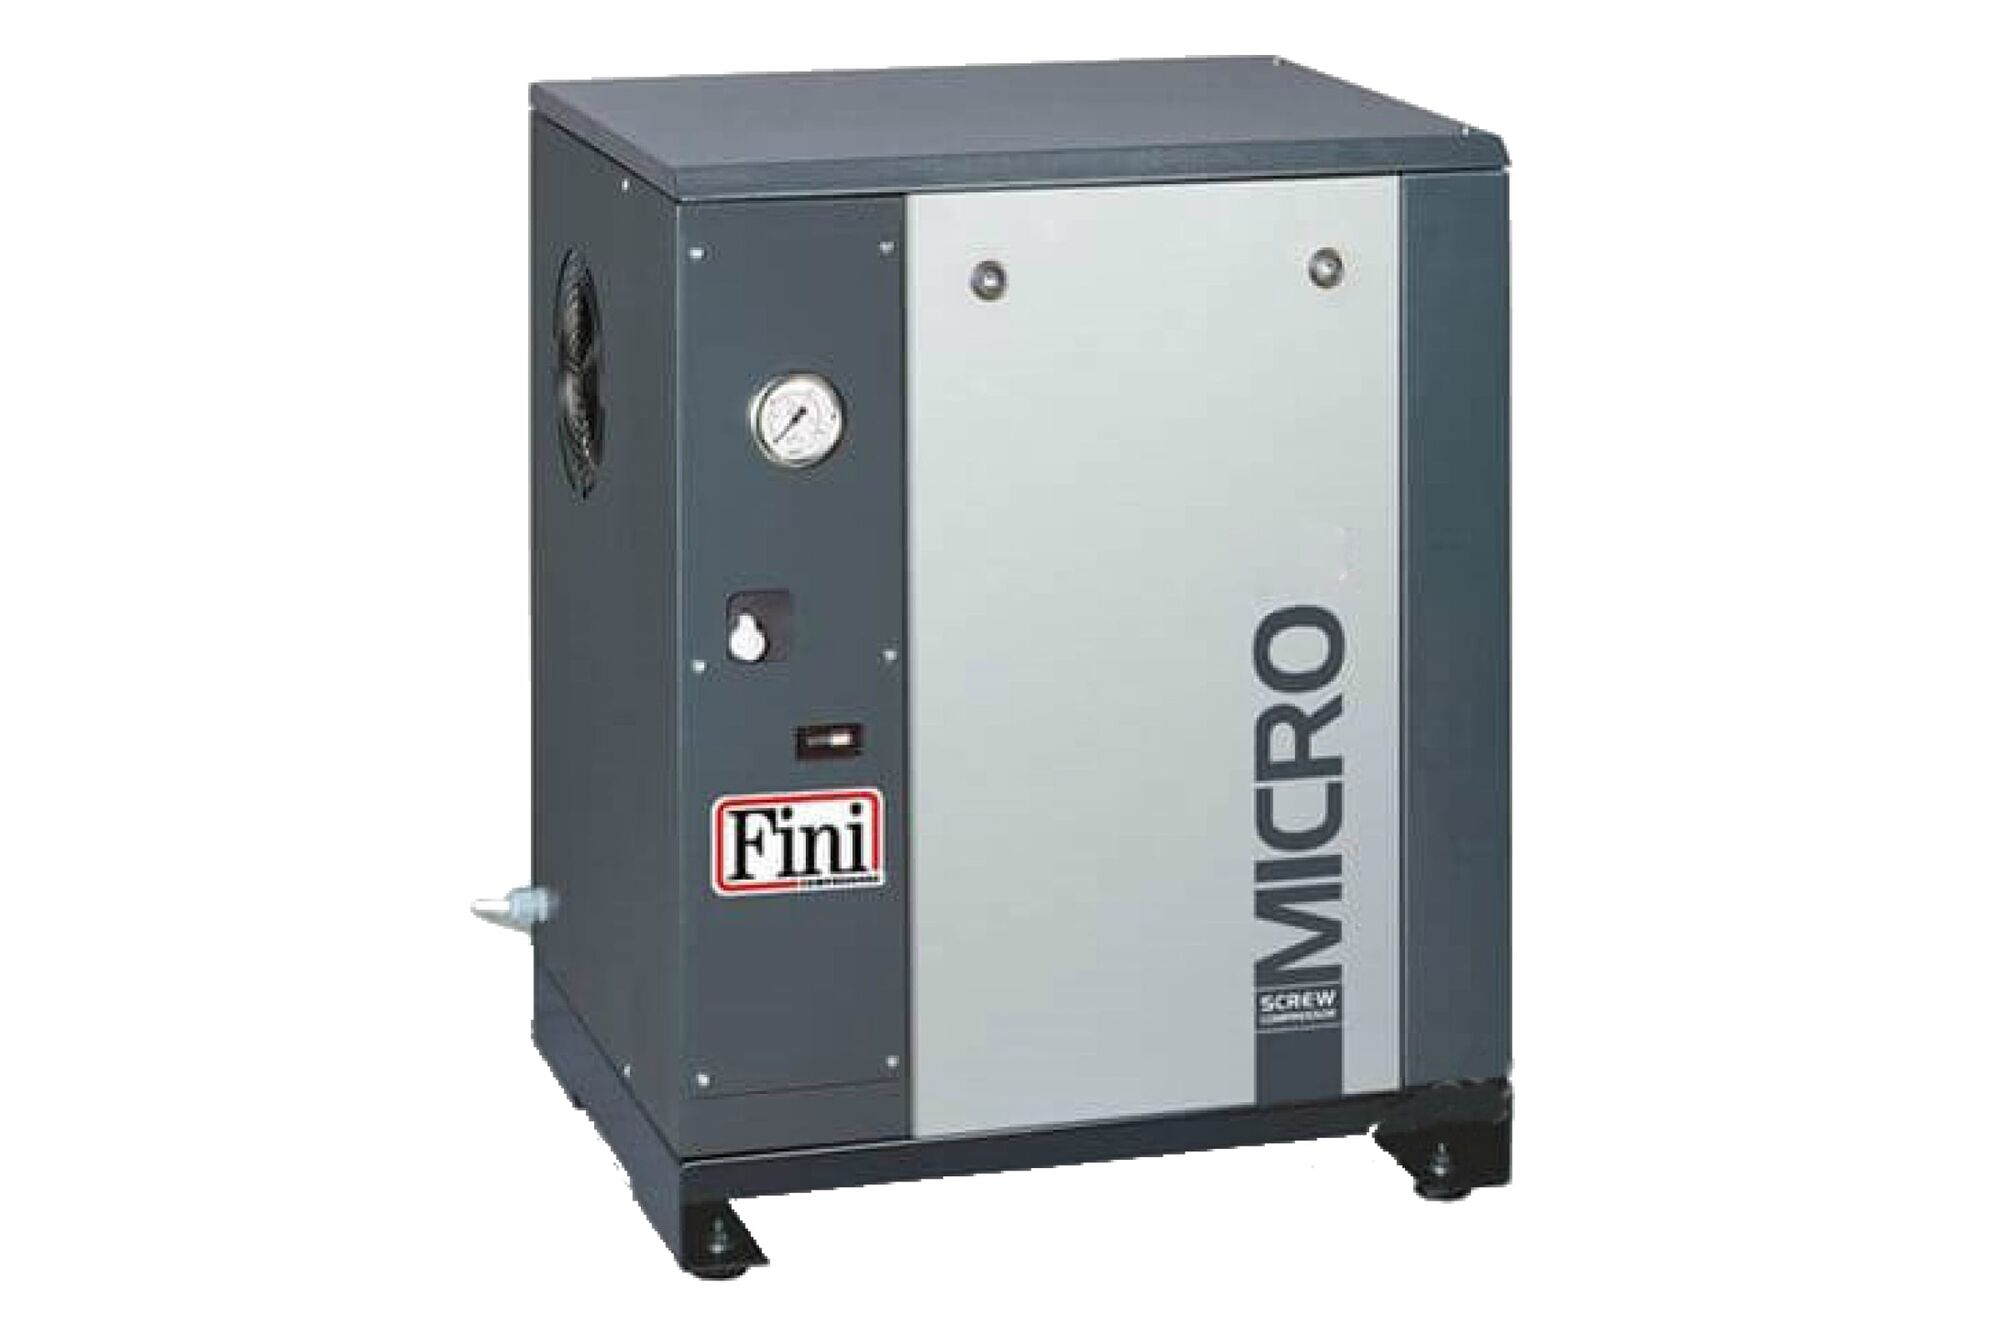 Однофазный винтовой компрессор 2.2 кВт FINI MICRO SE 2.2-10 M 100522798 Fini